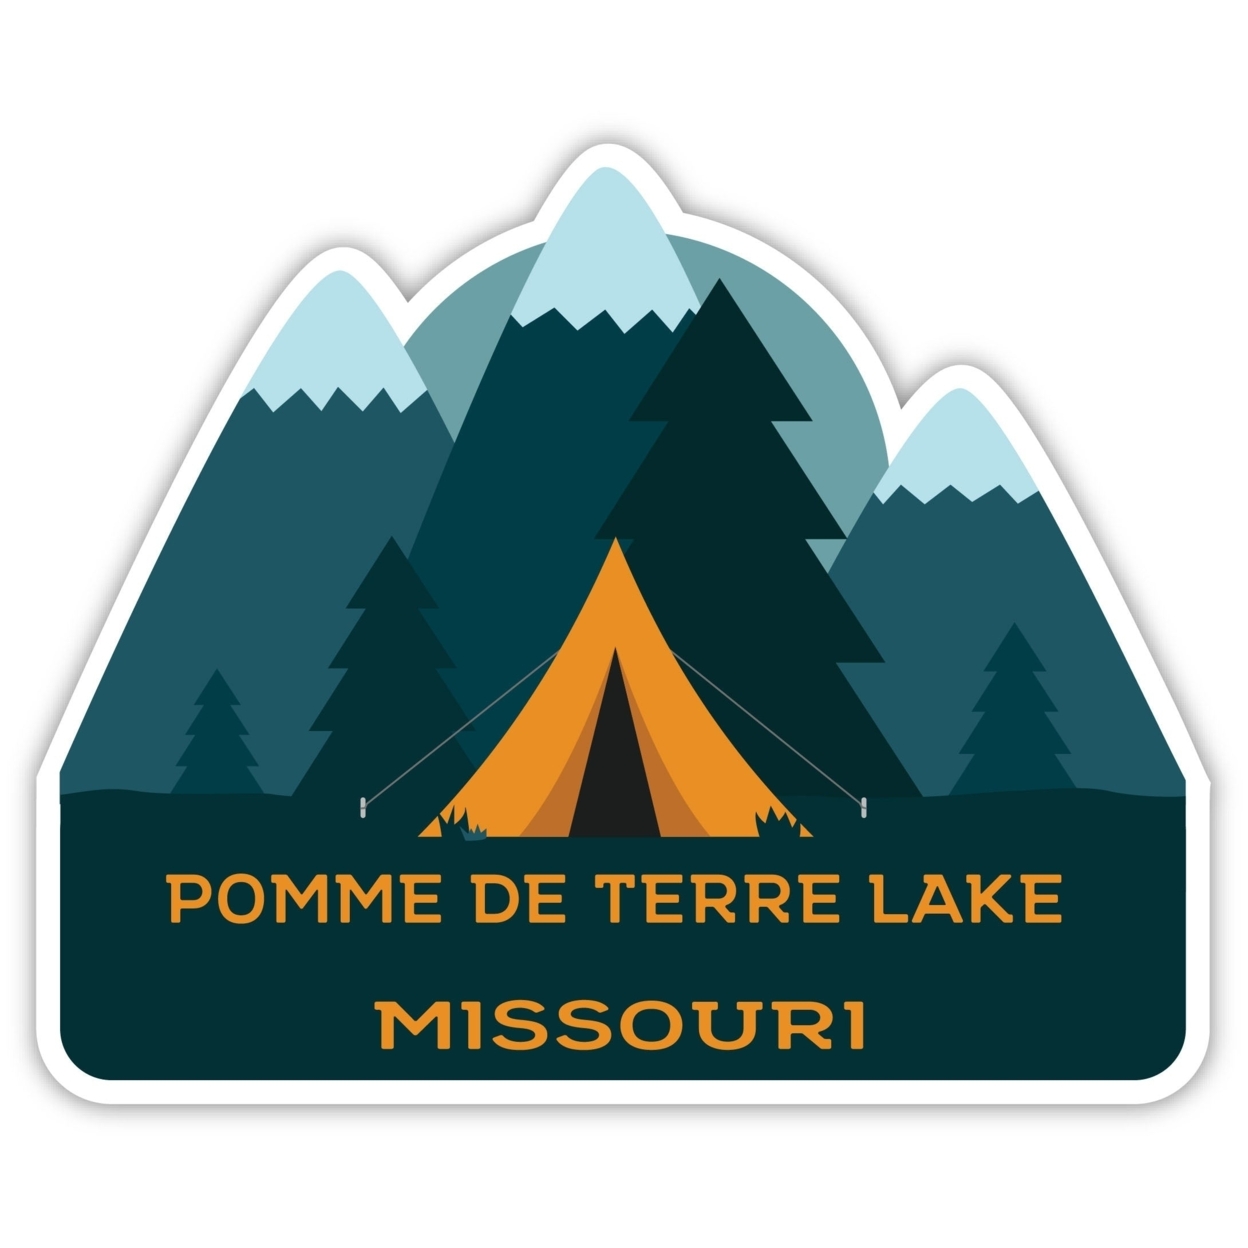 Pomme De Terre Lake Missouri Souvenir Decorative Stickers (Choose Theme And Size) - Single Unit, 2-Inch, Tent